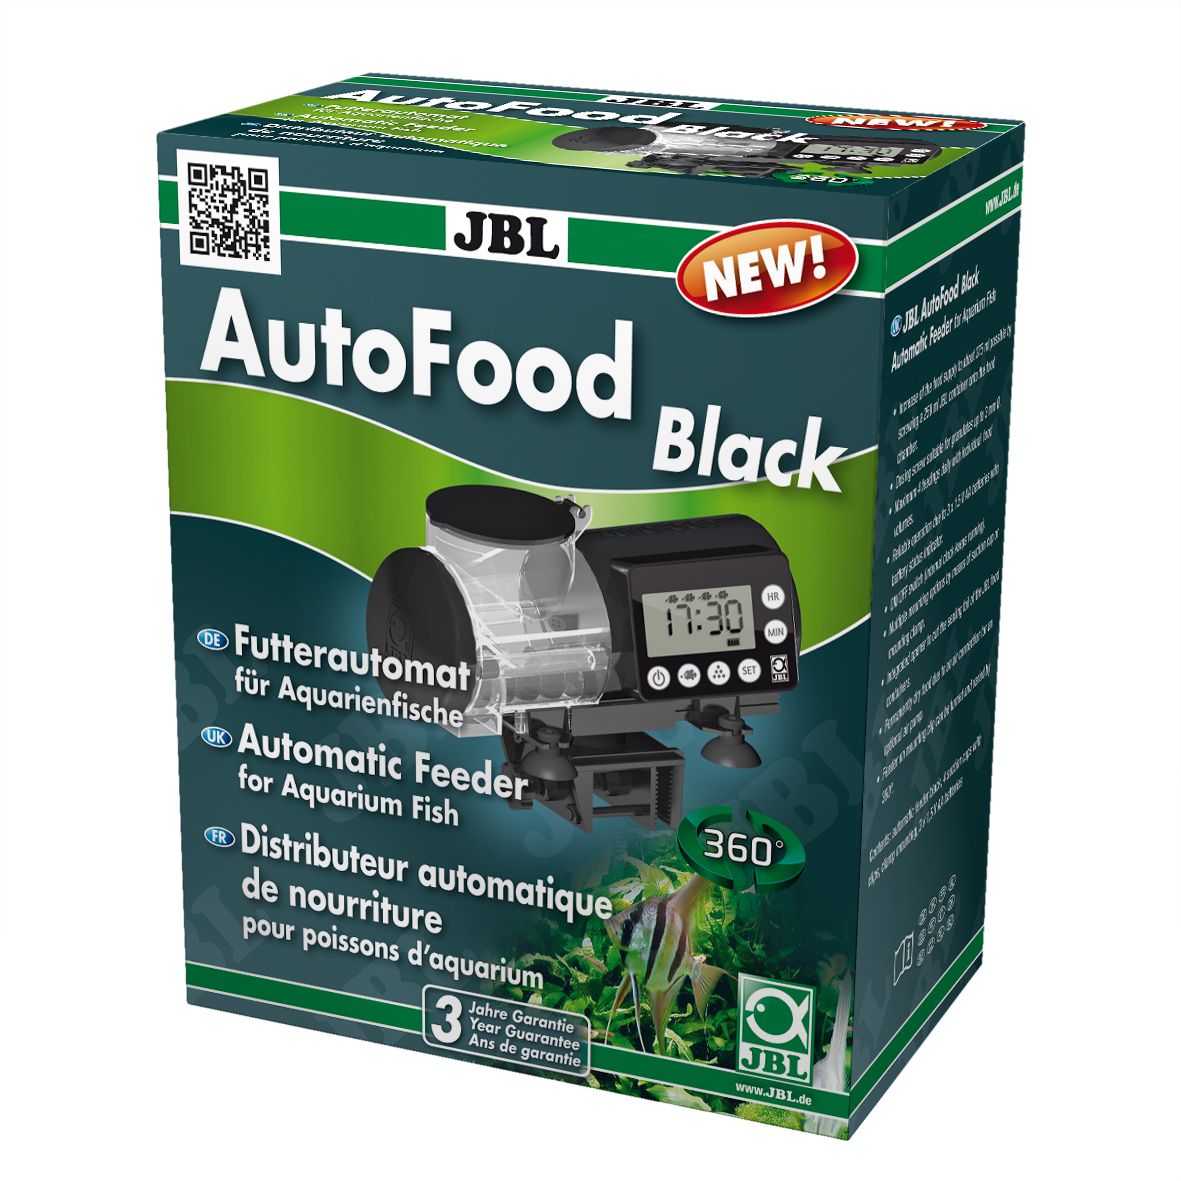 JBL Auto food - Biodiv'e